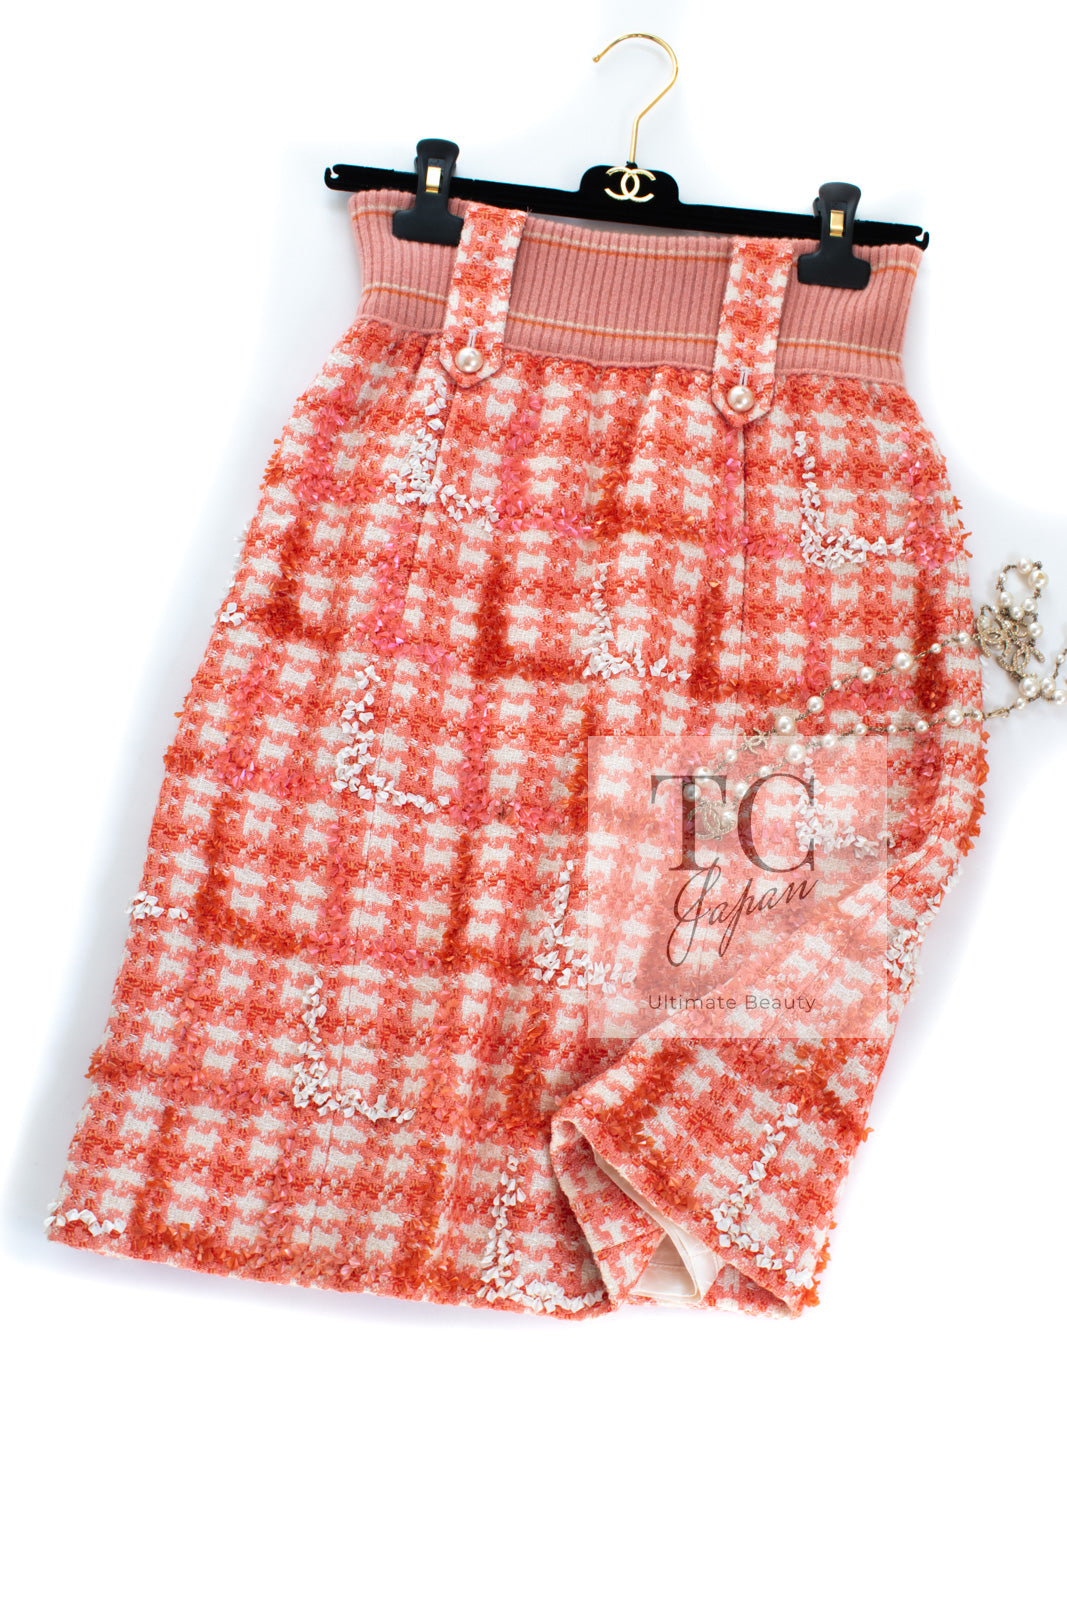 CHANEL 01S Orange Ivory Pearl Button Tweed Skirt 36 シャネル オレンジ アイボリー パール ボタンツイード スカート 即発